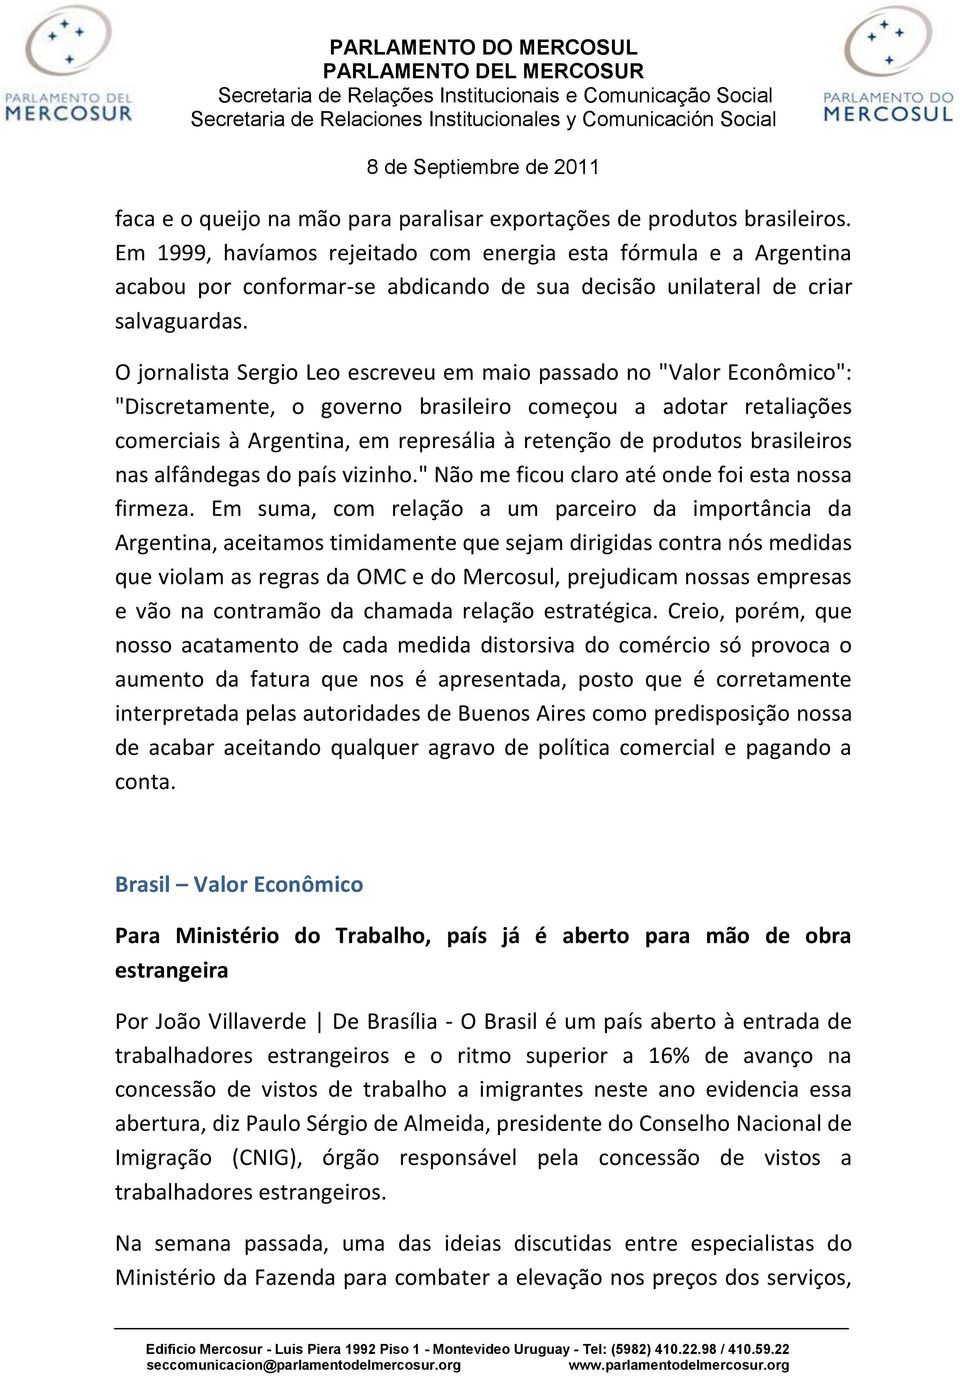 O jornalista Sergio Leo escreveu em maio passado no "Valor Econômico": "Discretamente, o governo brasileiro começou a adotar retaliações comerciais à Argentina, em represália à retenção de produtos